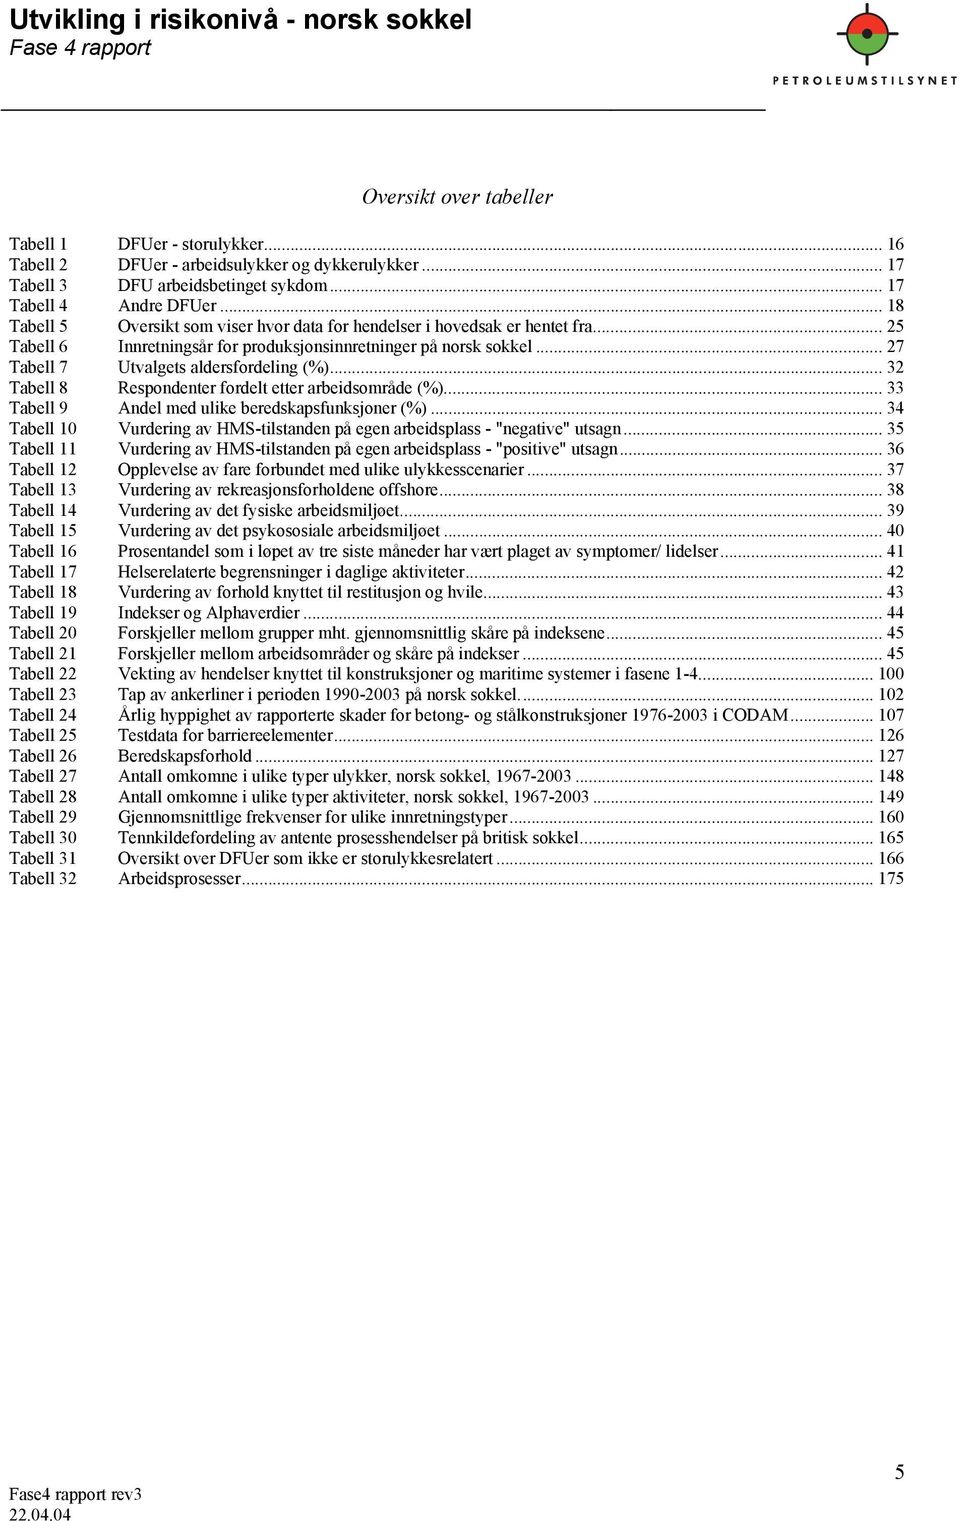 .. 32 Tabell 8 Respondenter fordelt etter arbeidsområde (%)... 33 Tabell 9 Andel med ulike beredskapsfunksjoner (%)... 34 Tabell 10 Vurdering av HMS-tilstanden på egen arbeidsplass - "negative" utsagn.